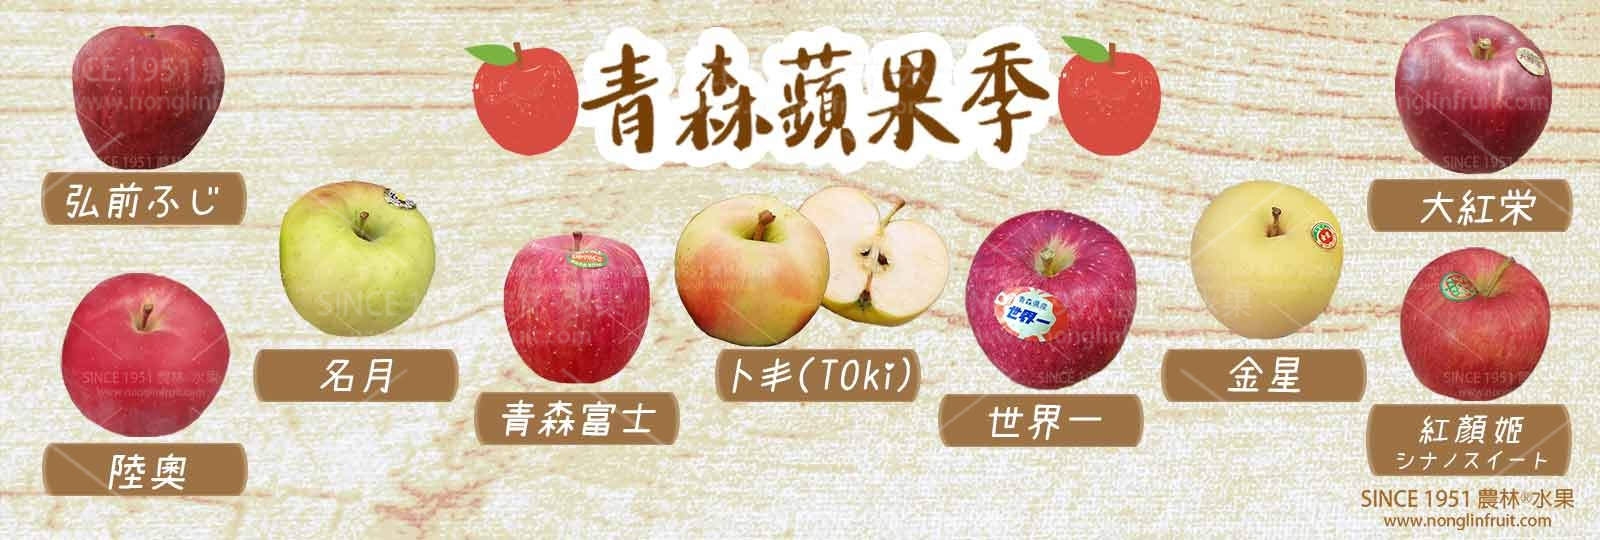 2022年-春秋冬日本青森縣蘋果總匯-壓縮版+浮水印